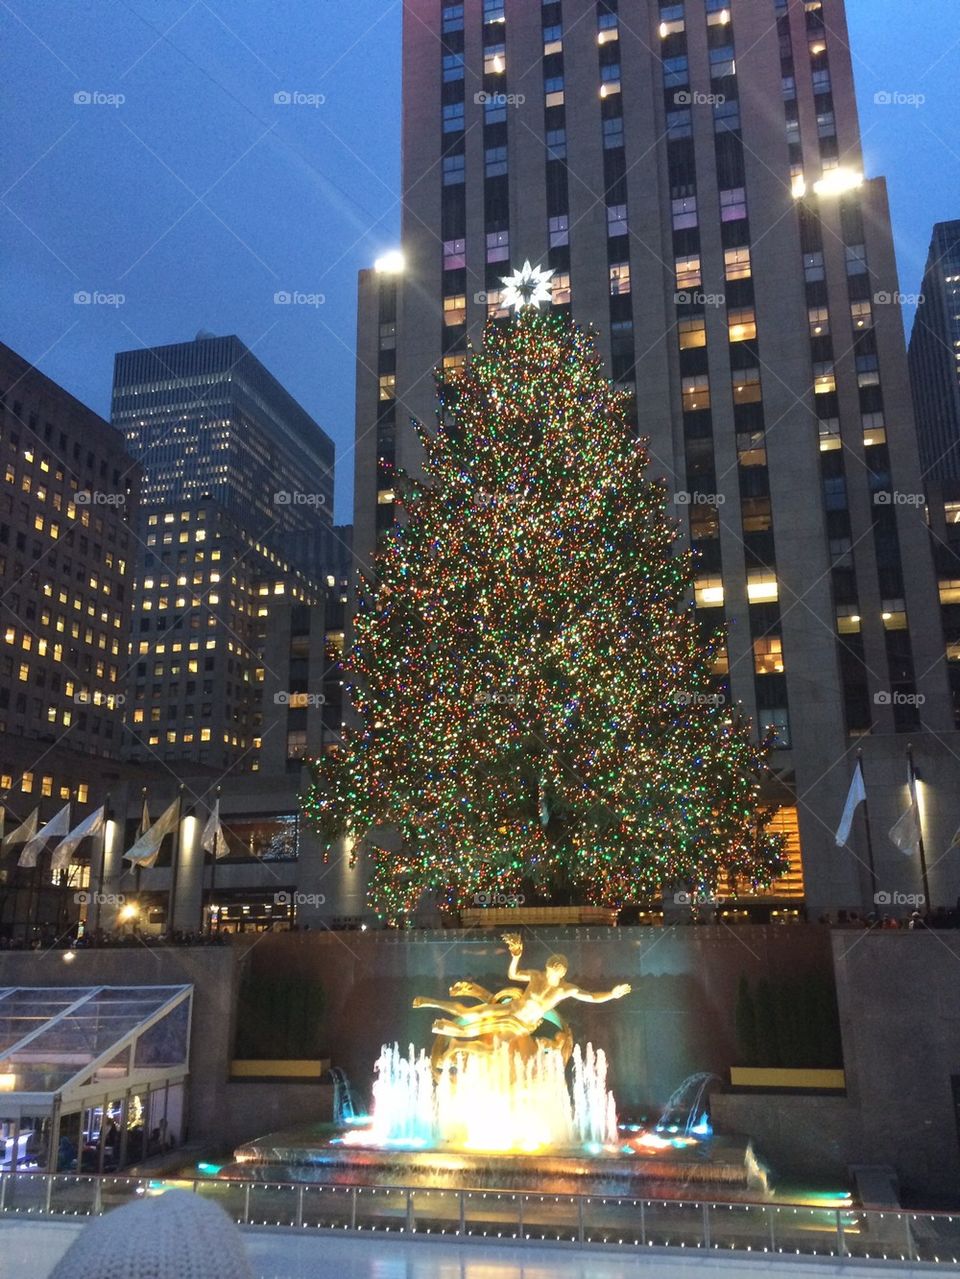 2014 New York Rockefeller Center Christmas Tree